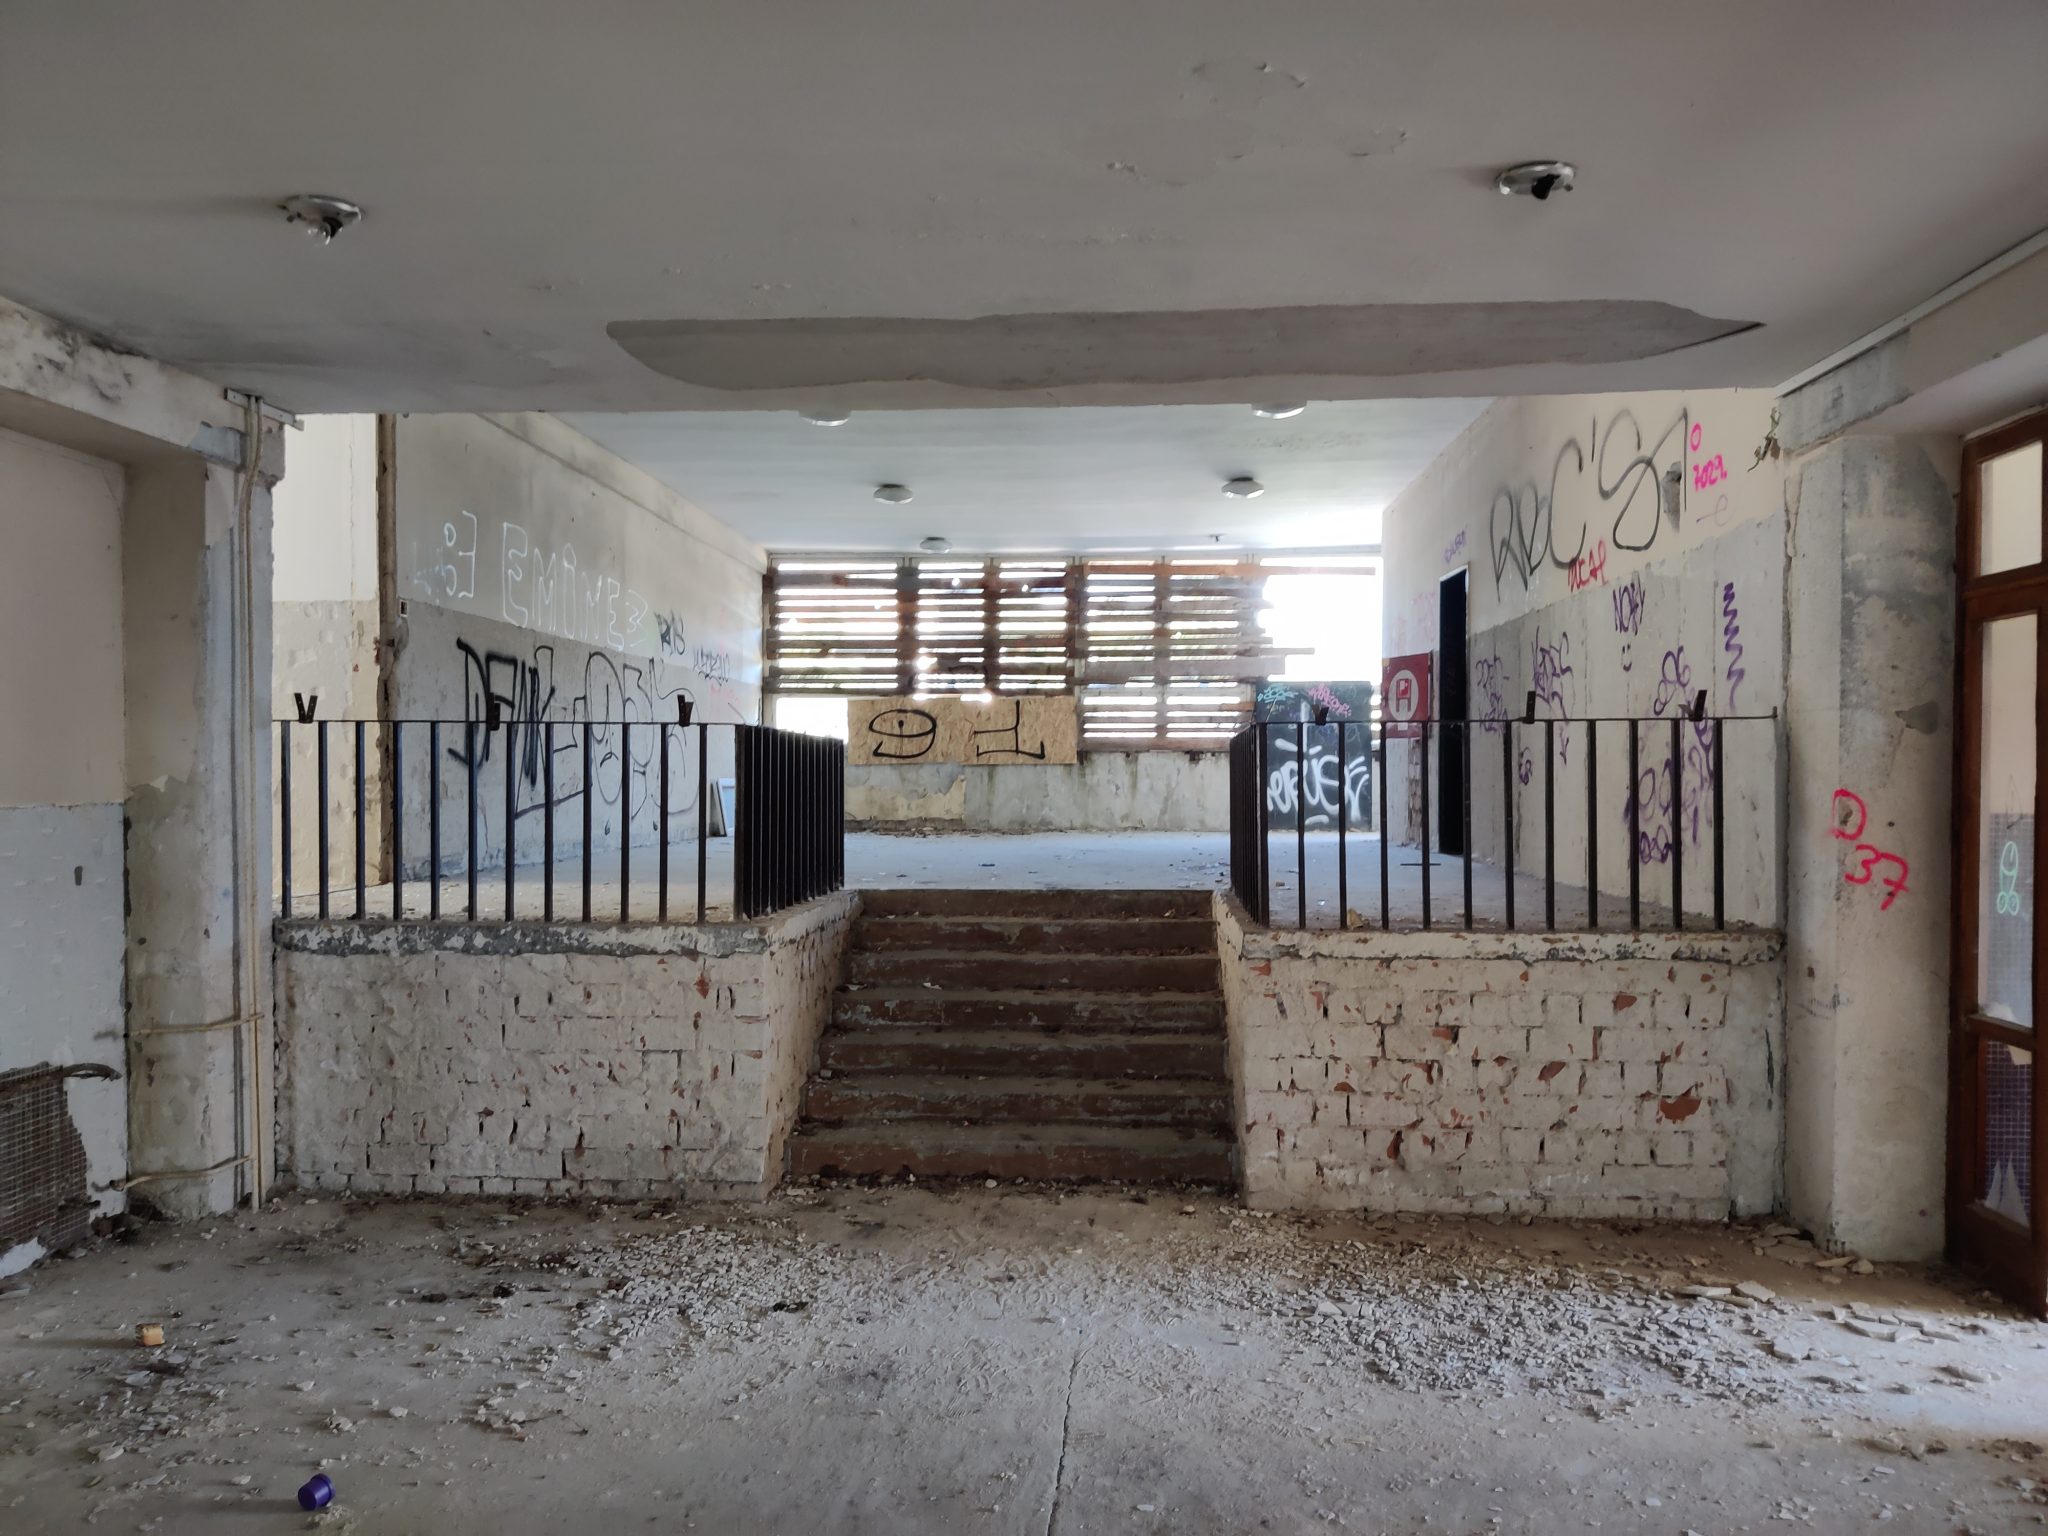 Ruinózny stav školy pred rekonštrukciou